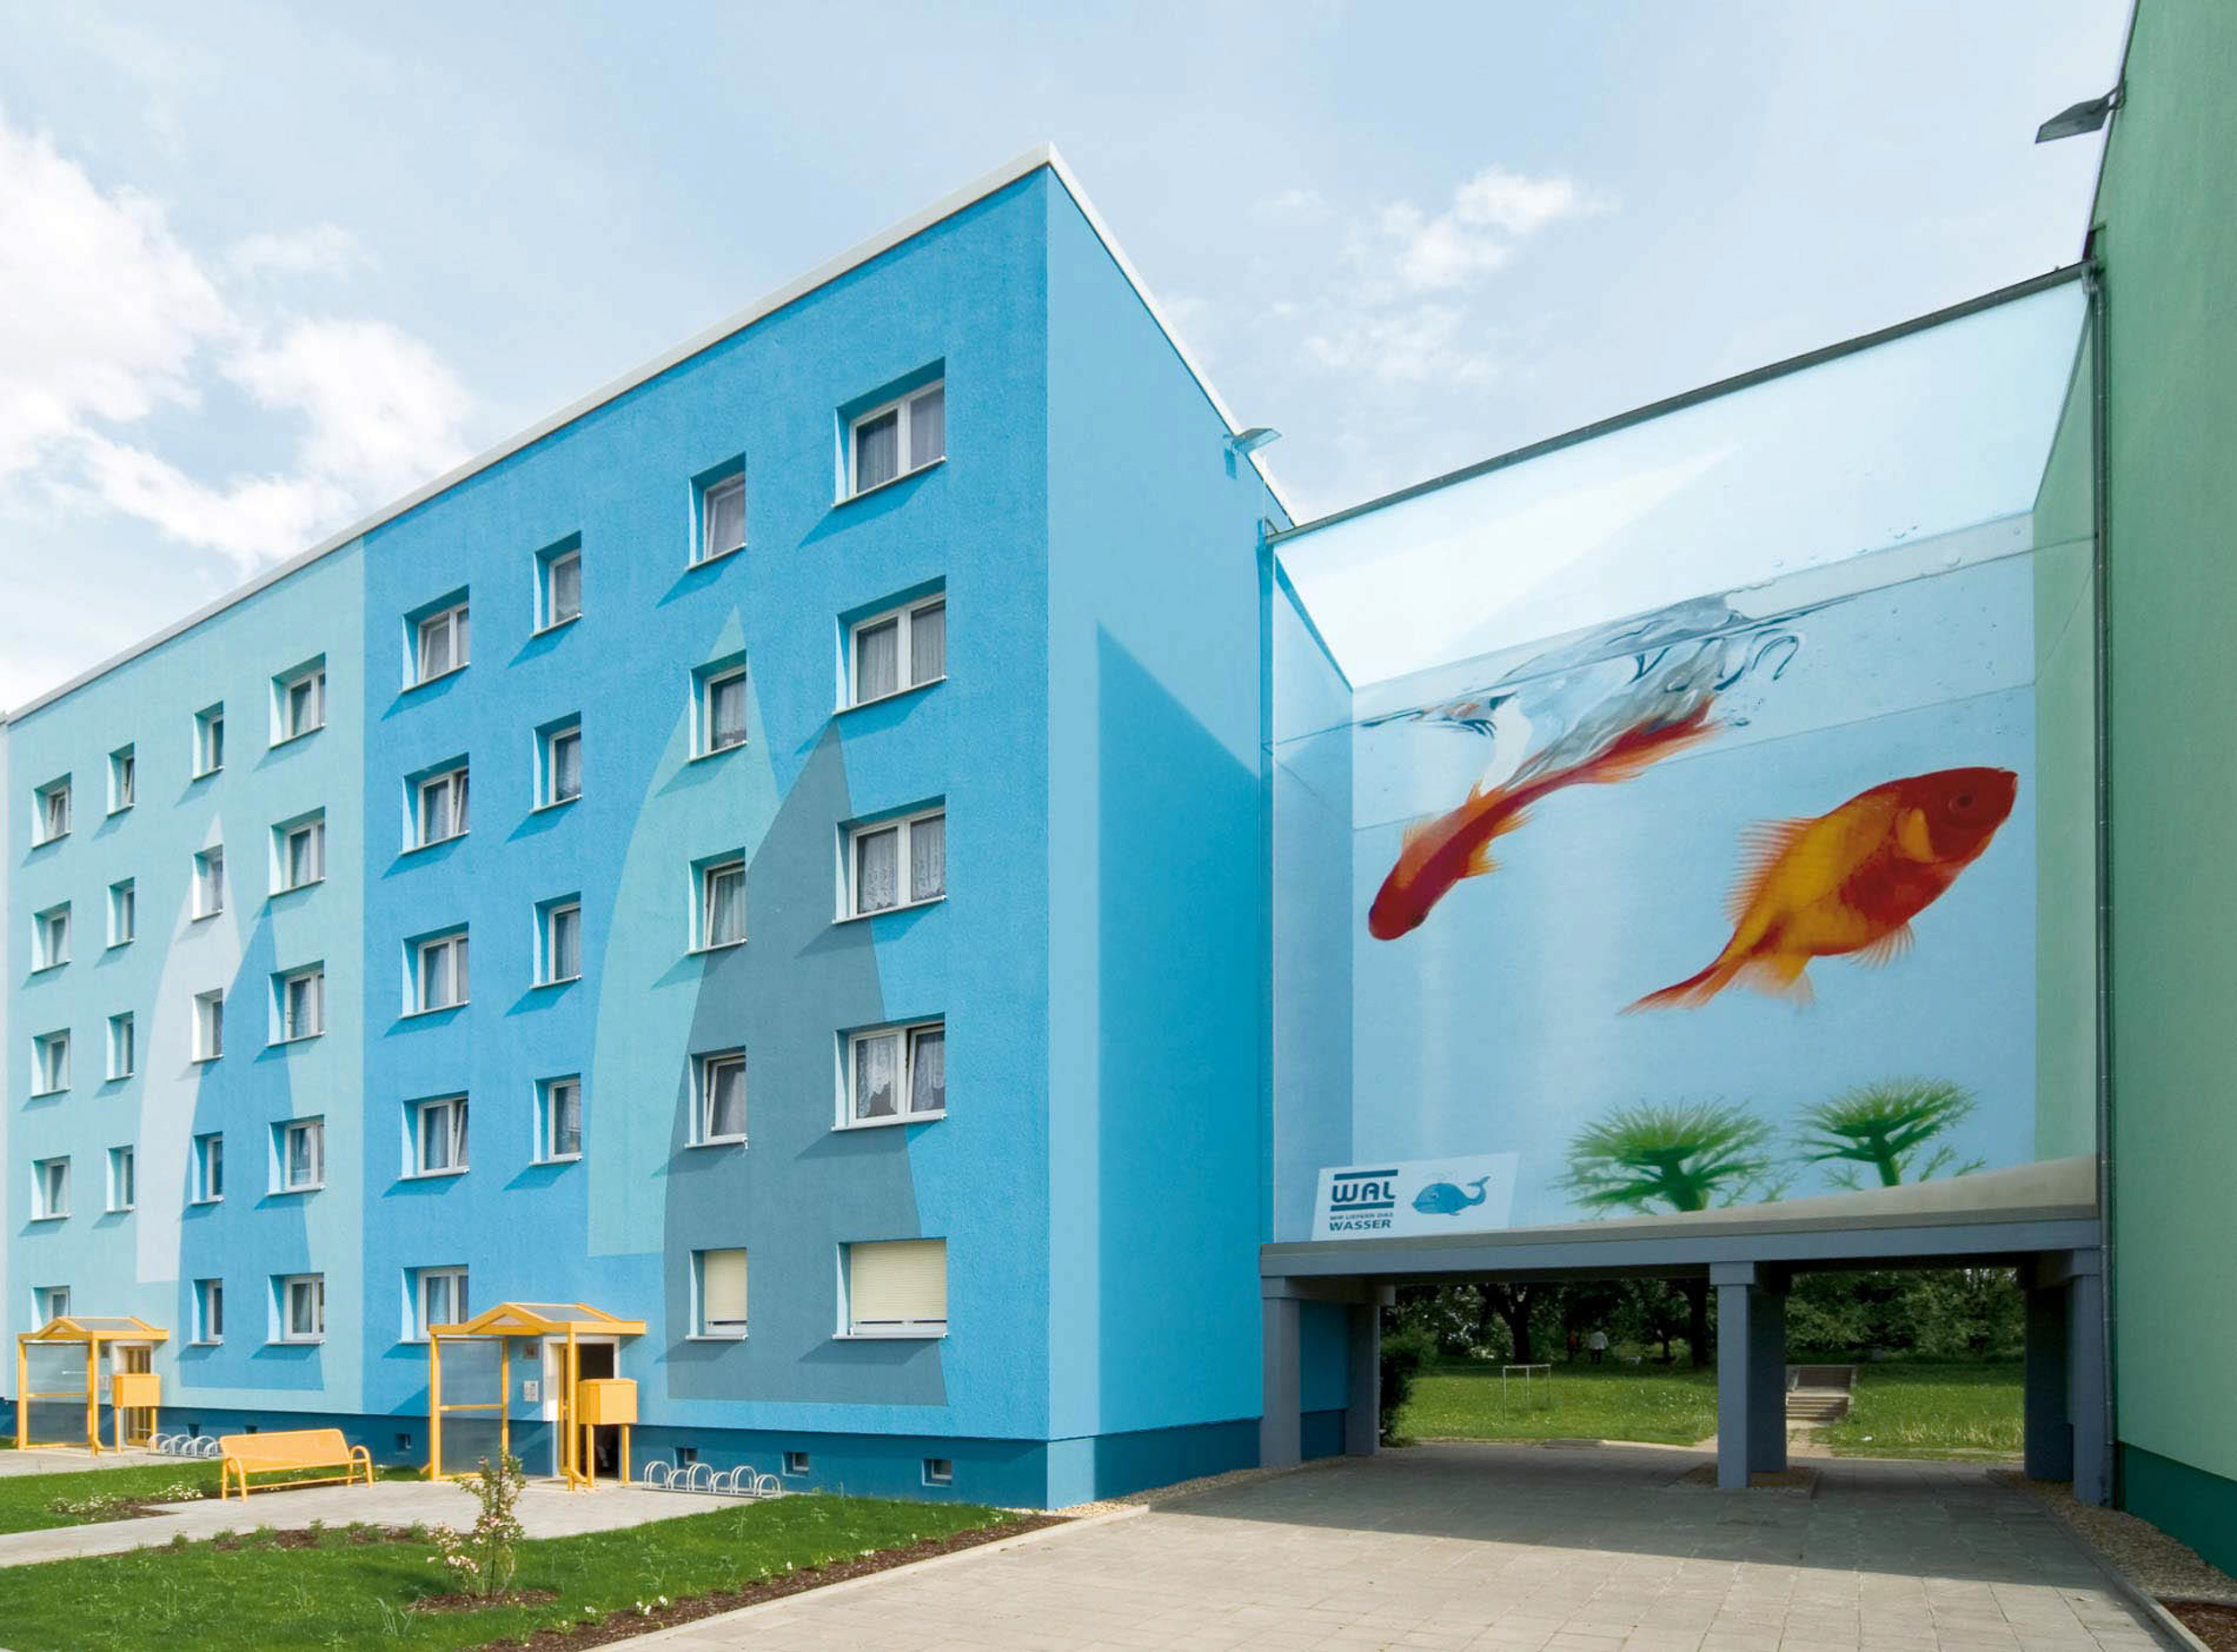 Fassadengestaltung-Putz-Aquarium-Fische-Plattenbau-modern-vorschlag.jpg